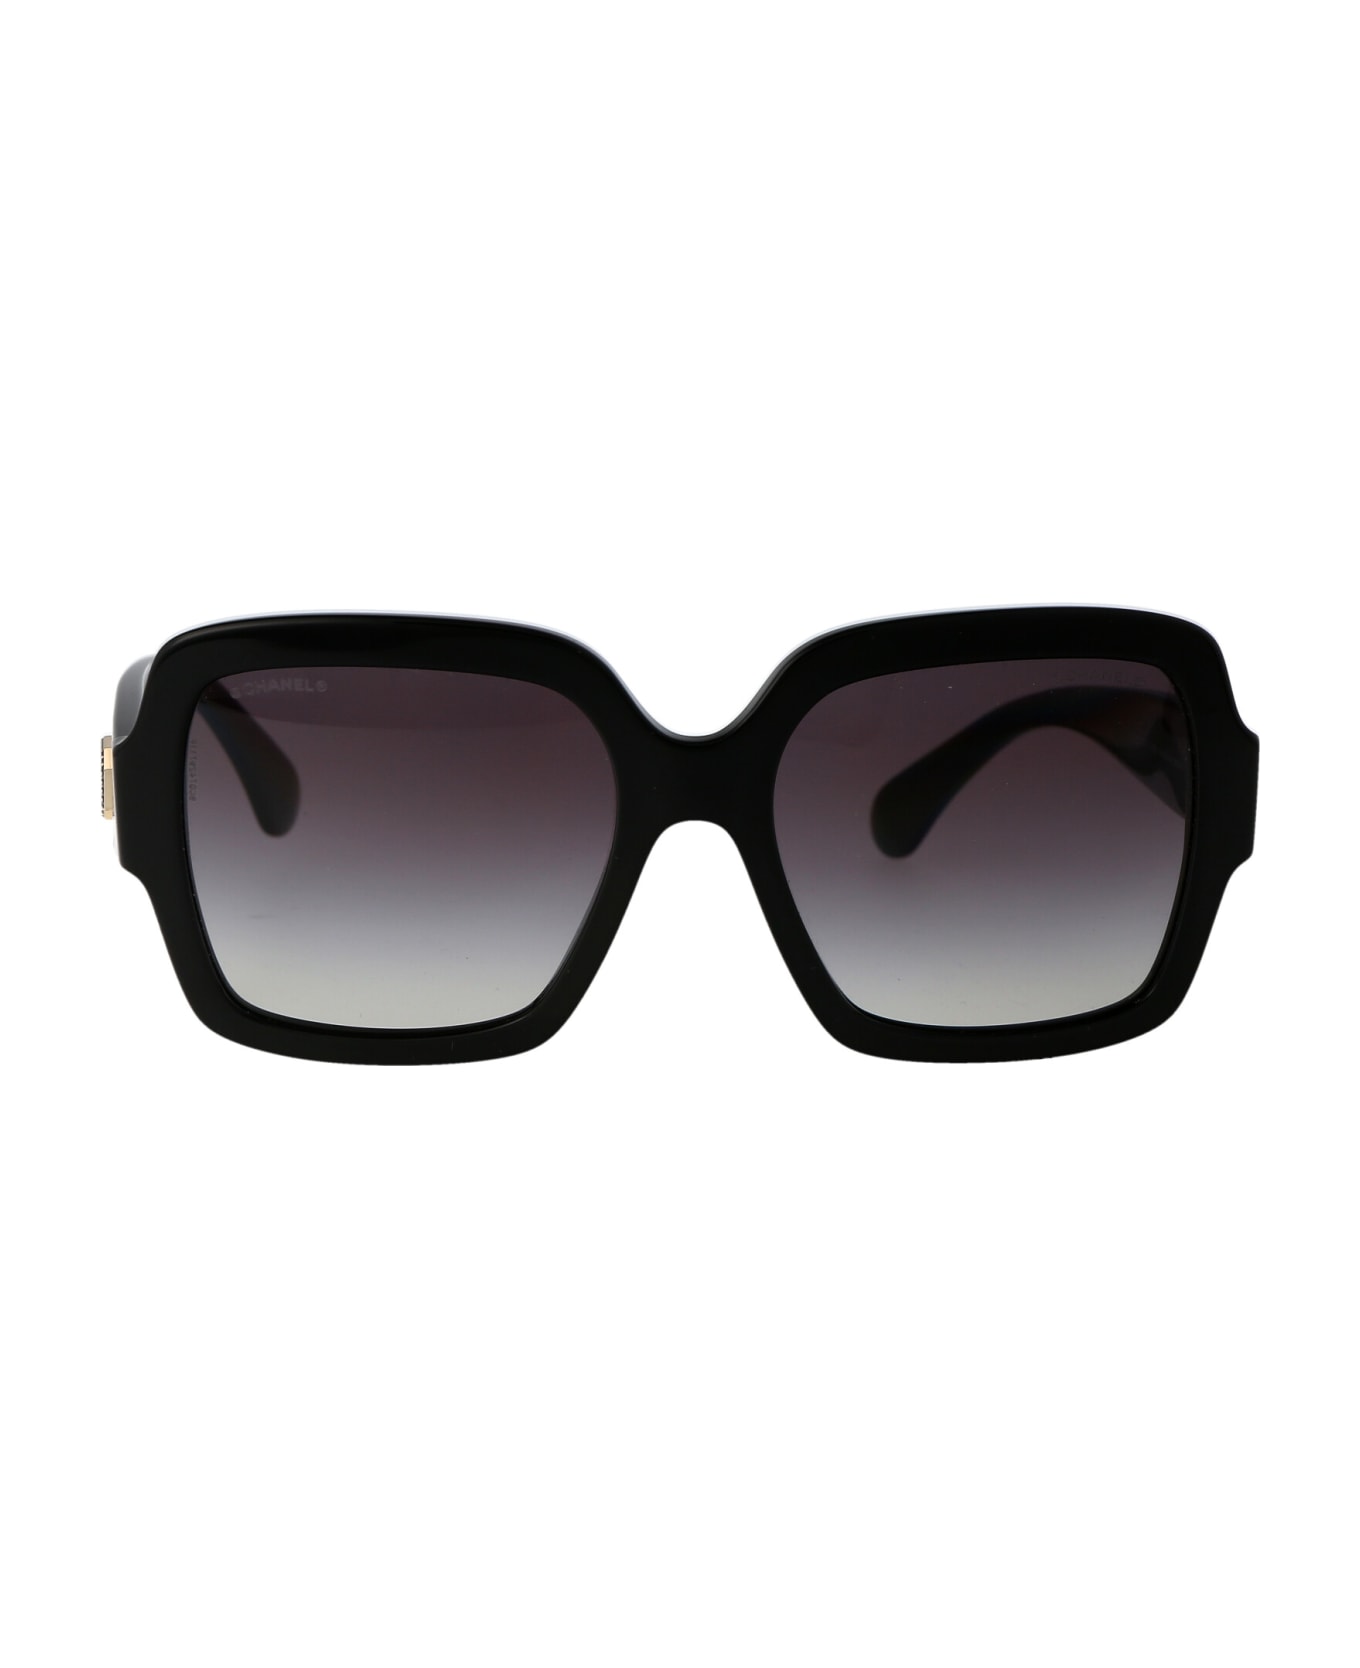 Chanel 0ch5479 Sunglasses - 1403S6 BLACK サングラス